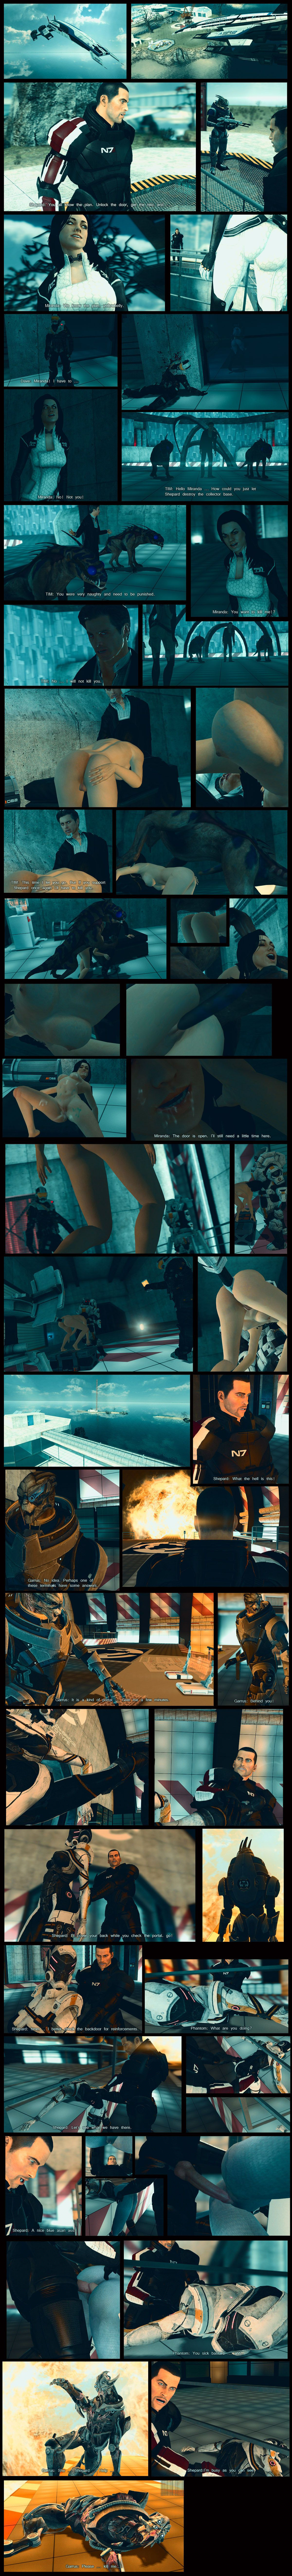 Mass Effect Gmod series